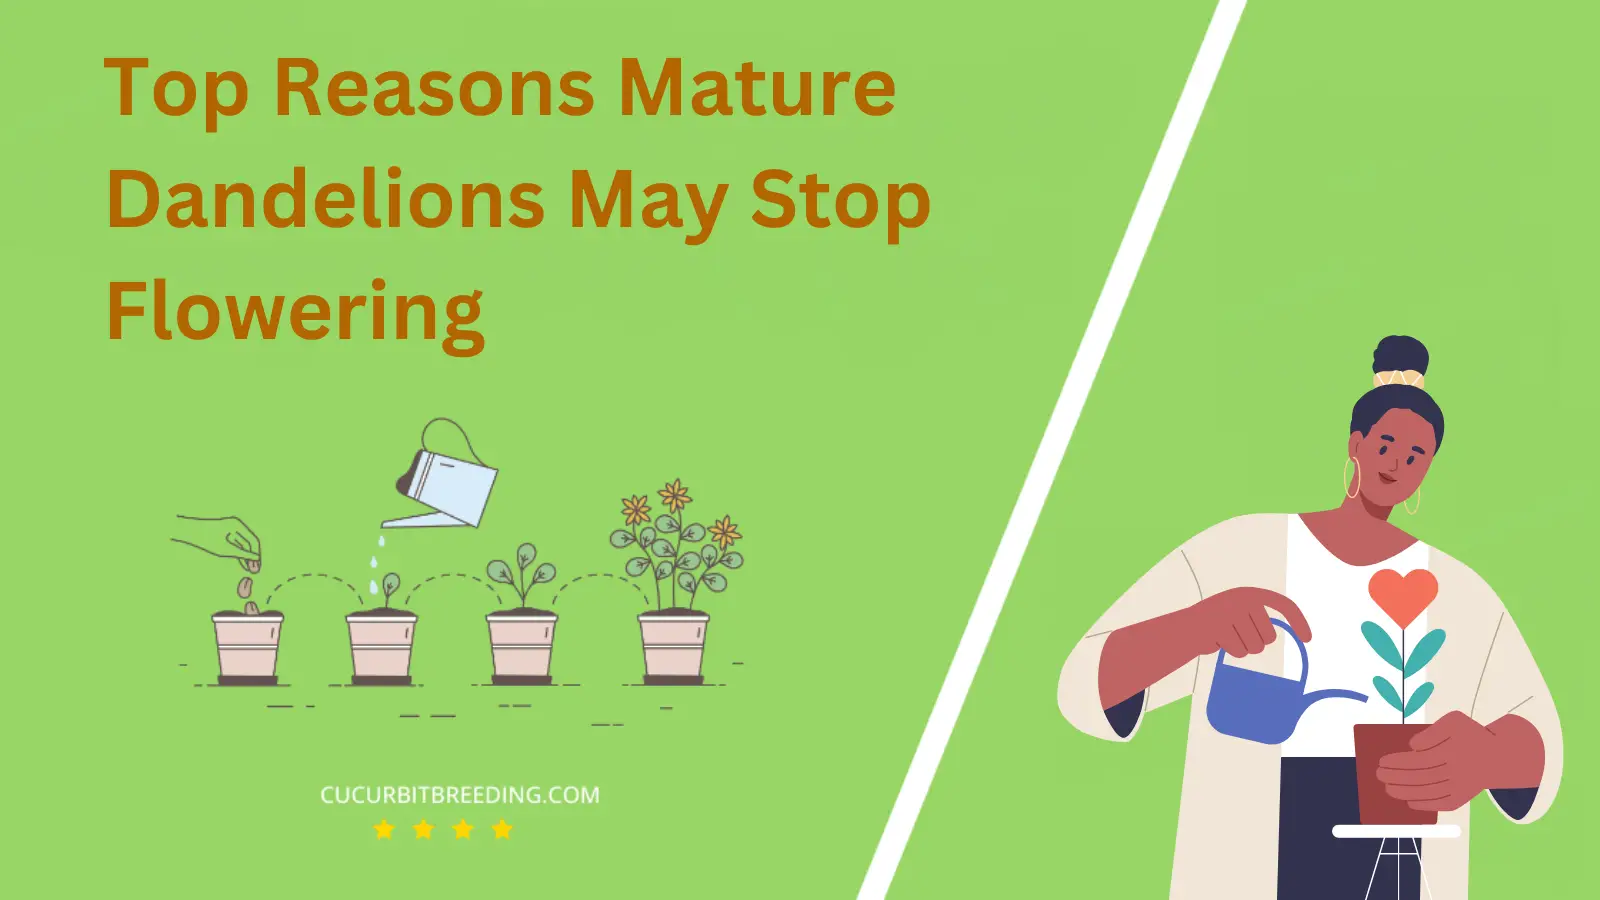 Top Reasons Mature Dandelions May Stop Flowering